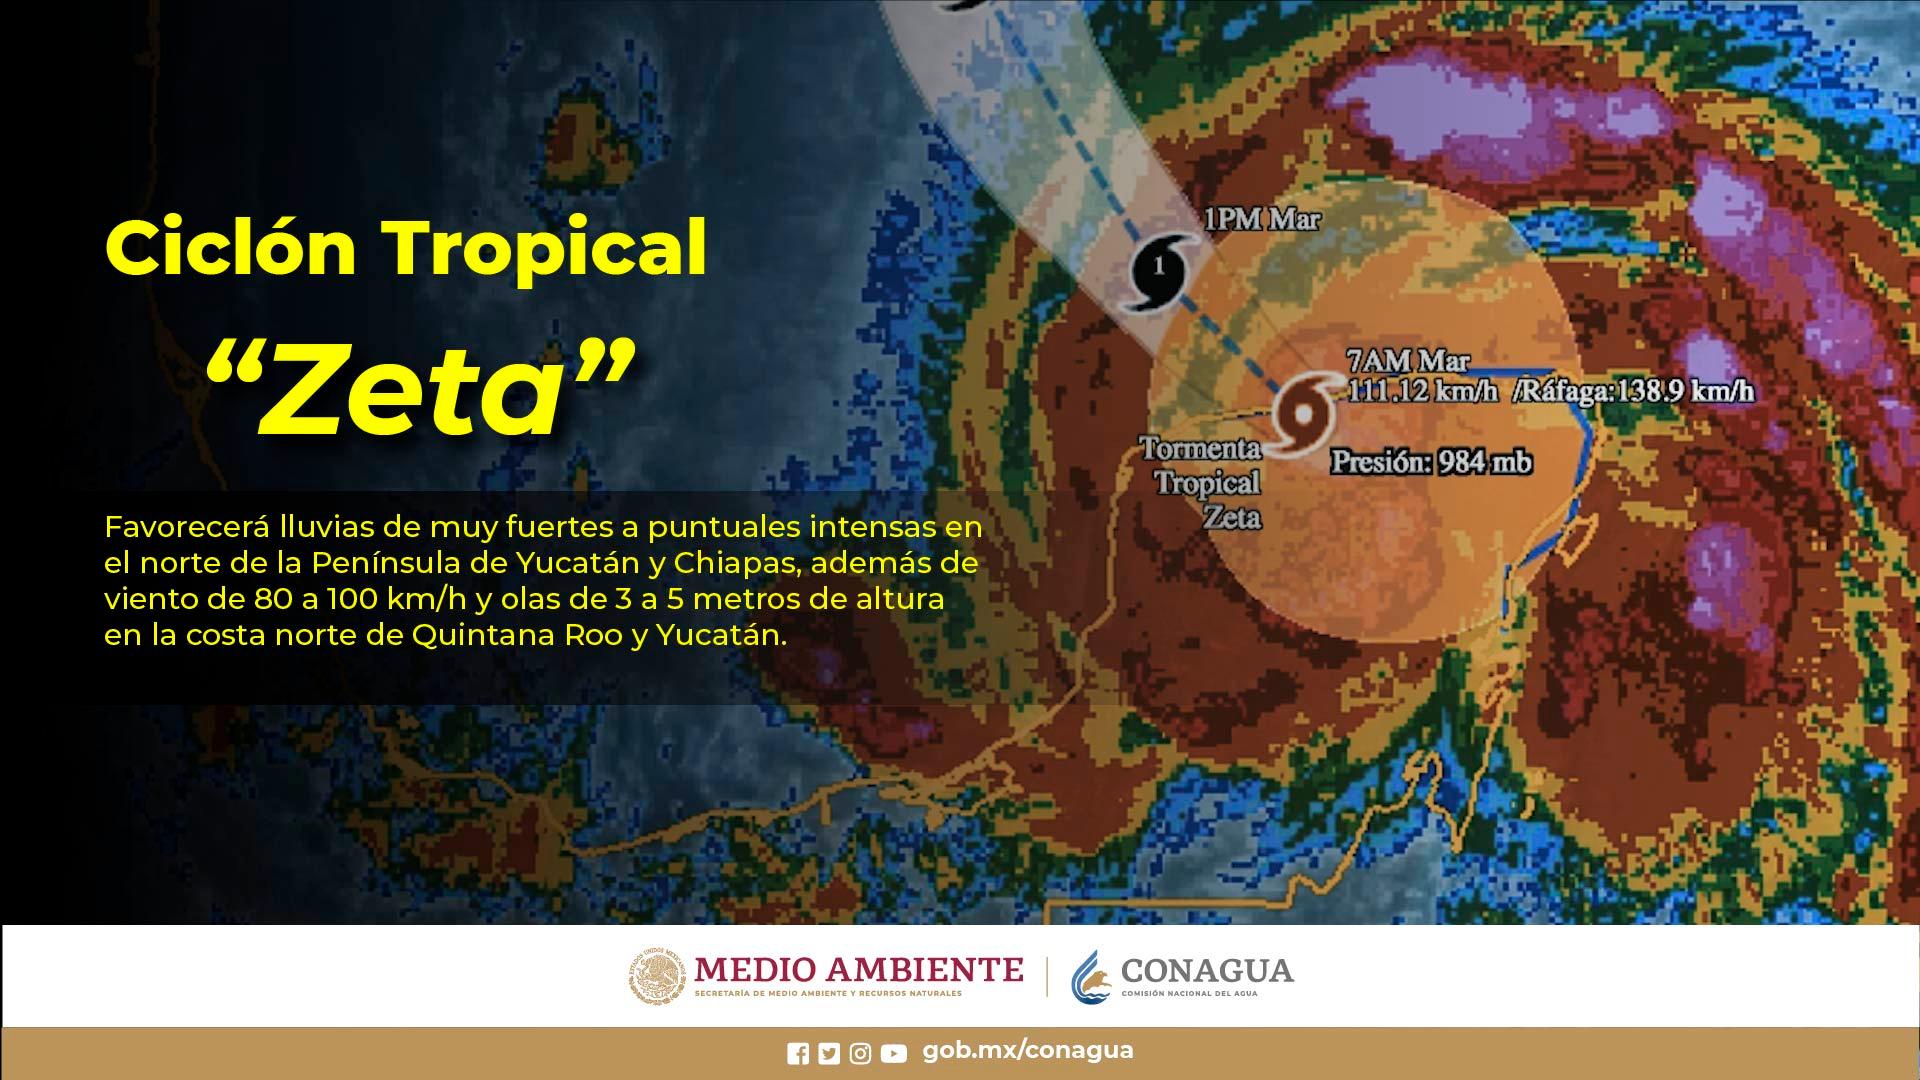 Zeta mantendrá las condiciones para lluvias intensas en Yucatán y muy fuertes en Campeche, Chiapas y Quintana Roo